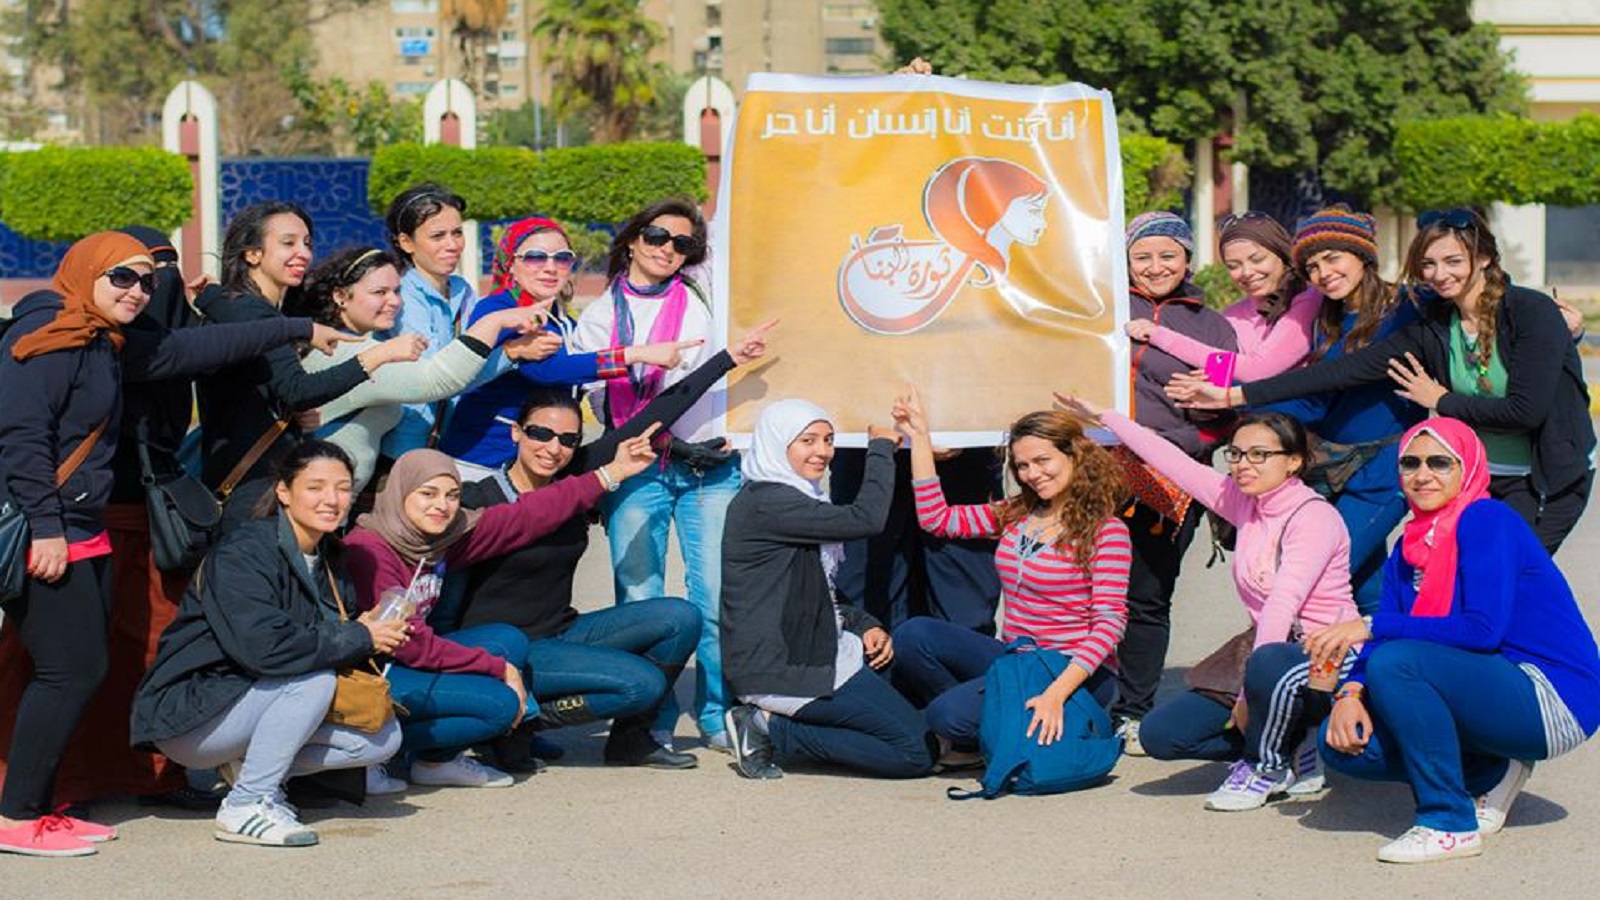 مصر: "ثورة" البنات".. تغيير تدريجي